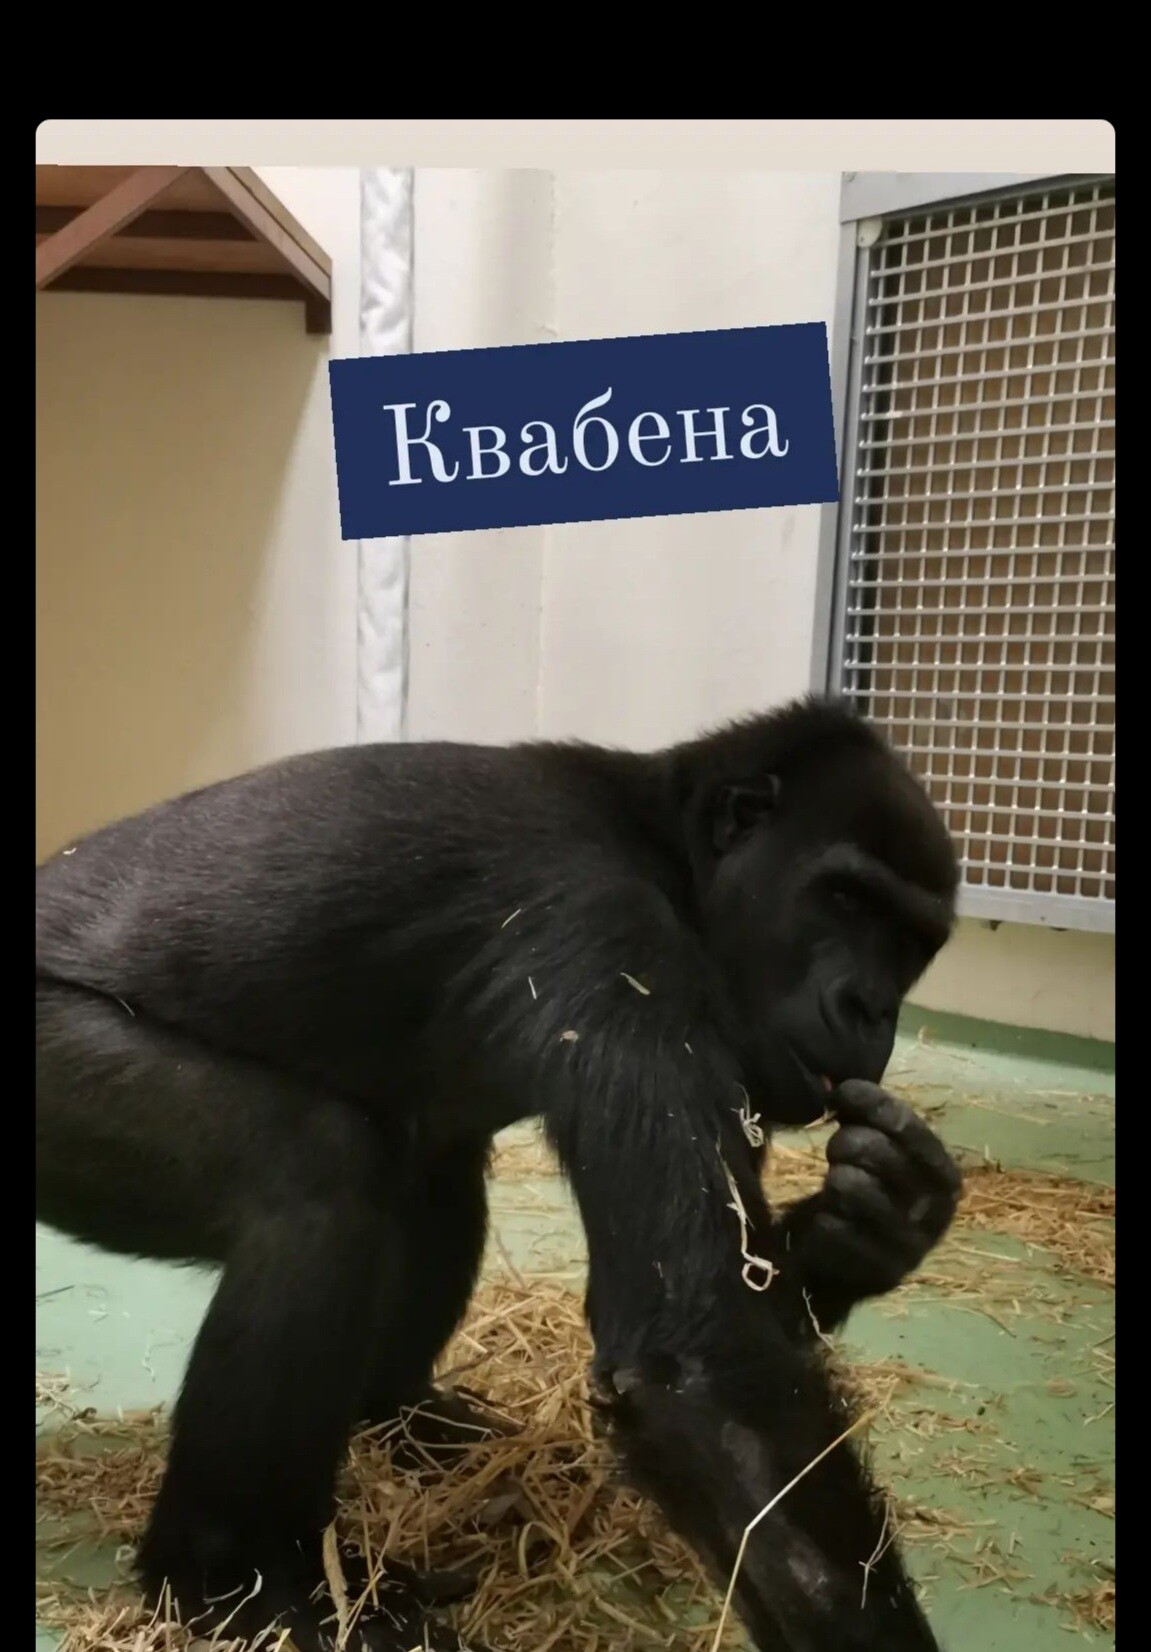 новый казанский зоопарк